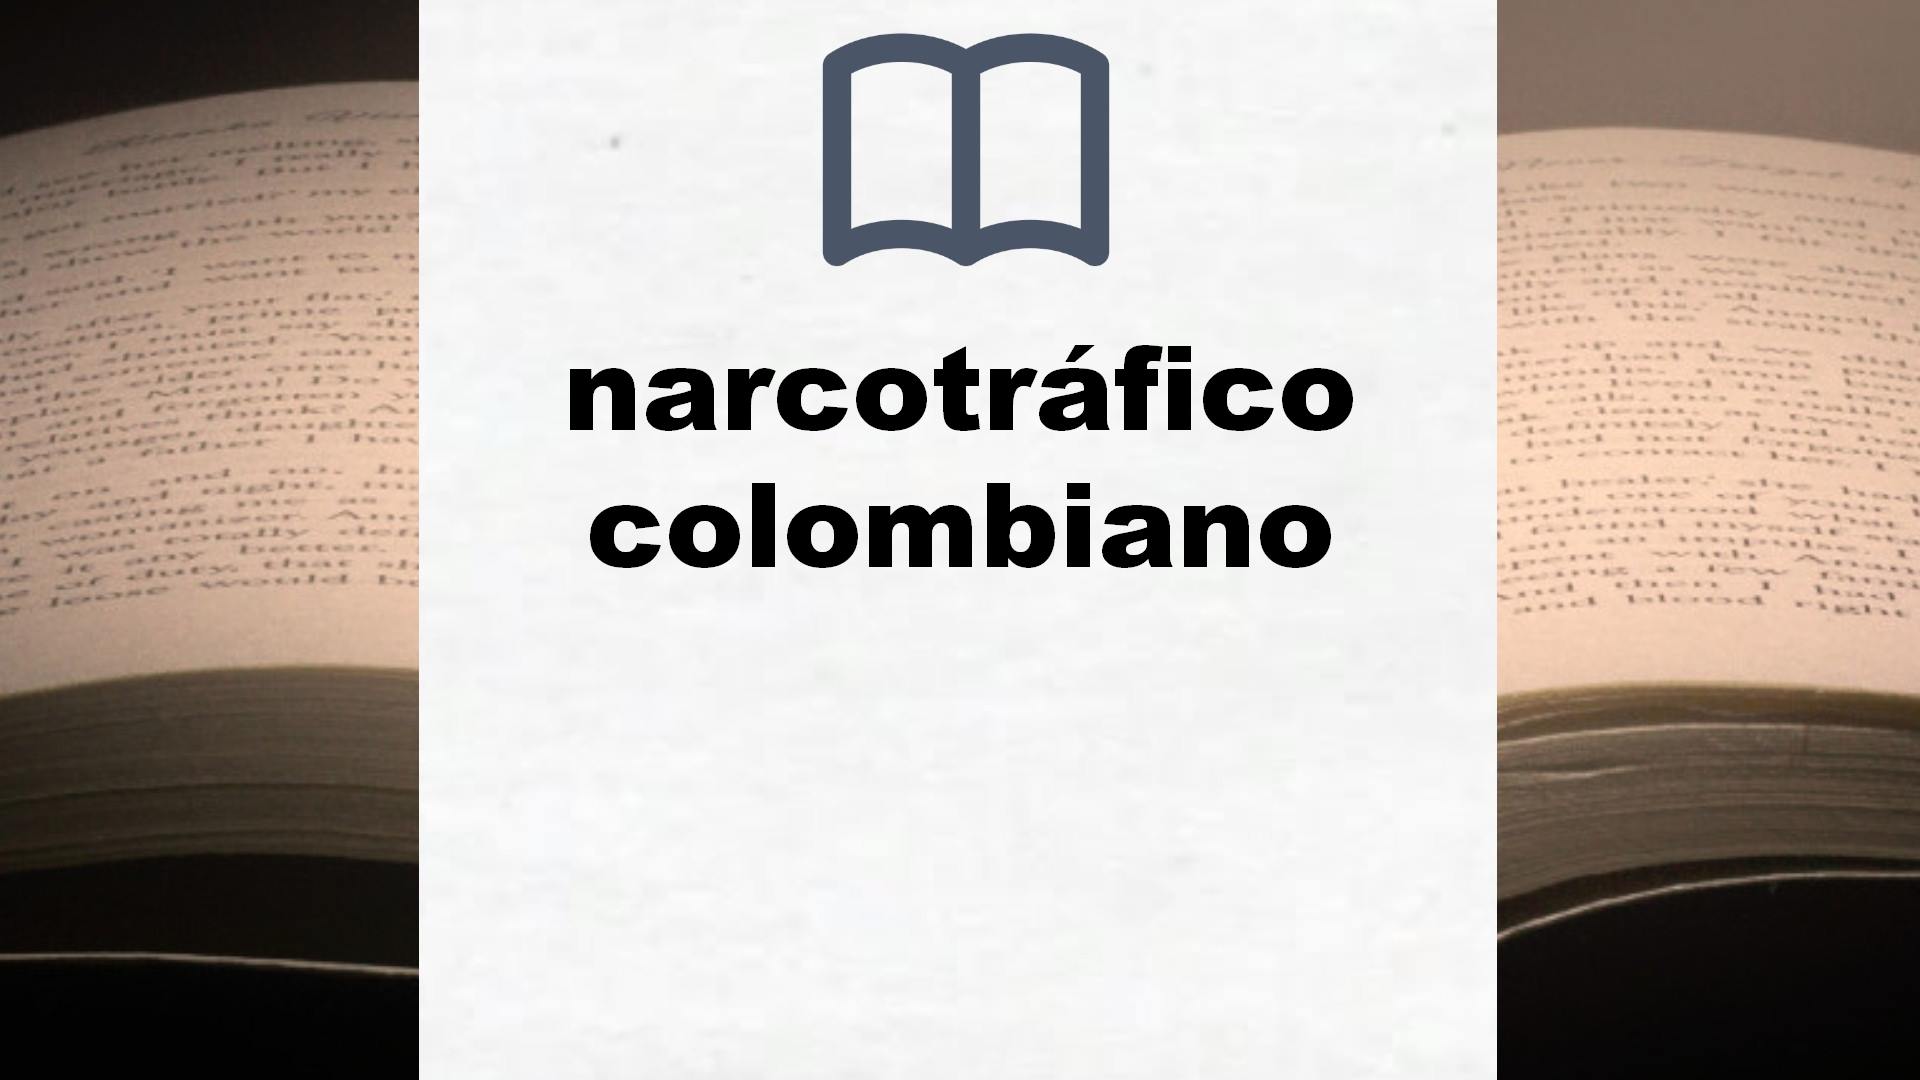 Libros sobre narcotráfico colombiano